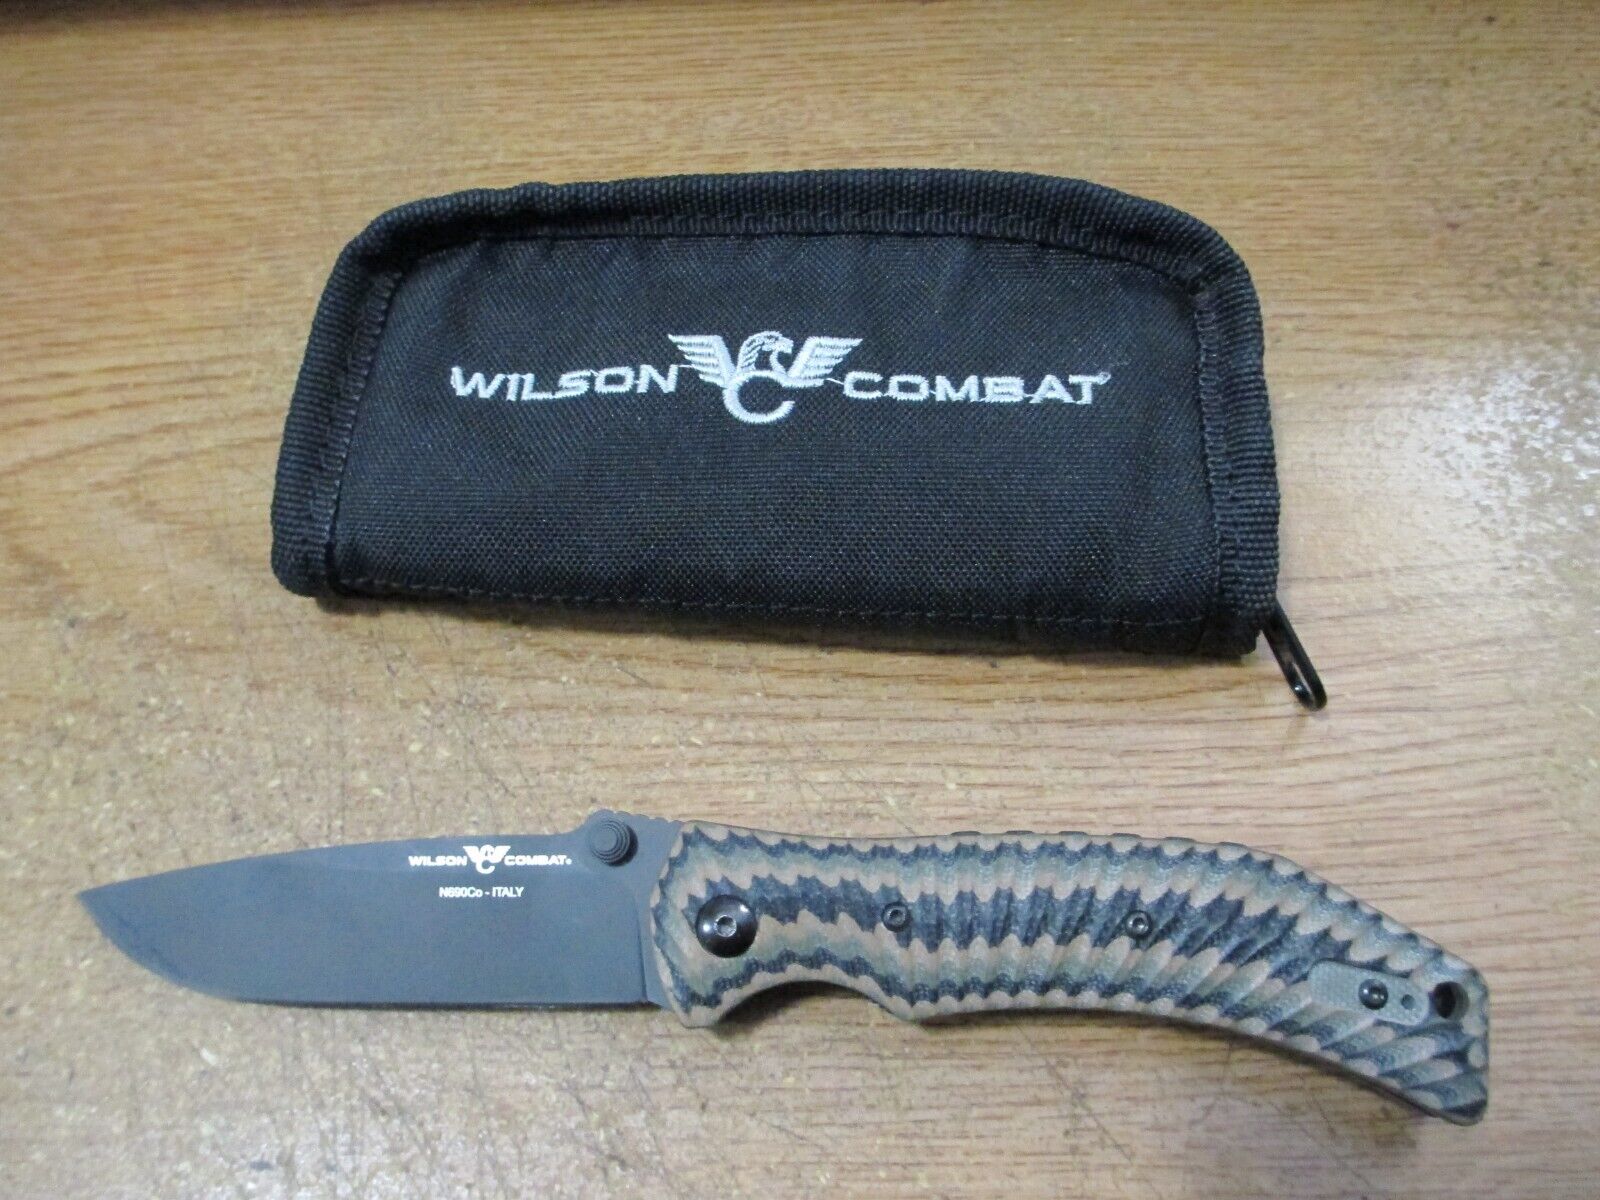 WILSON COMBAT ELC KNIFE W/Case